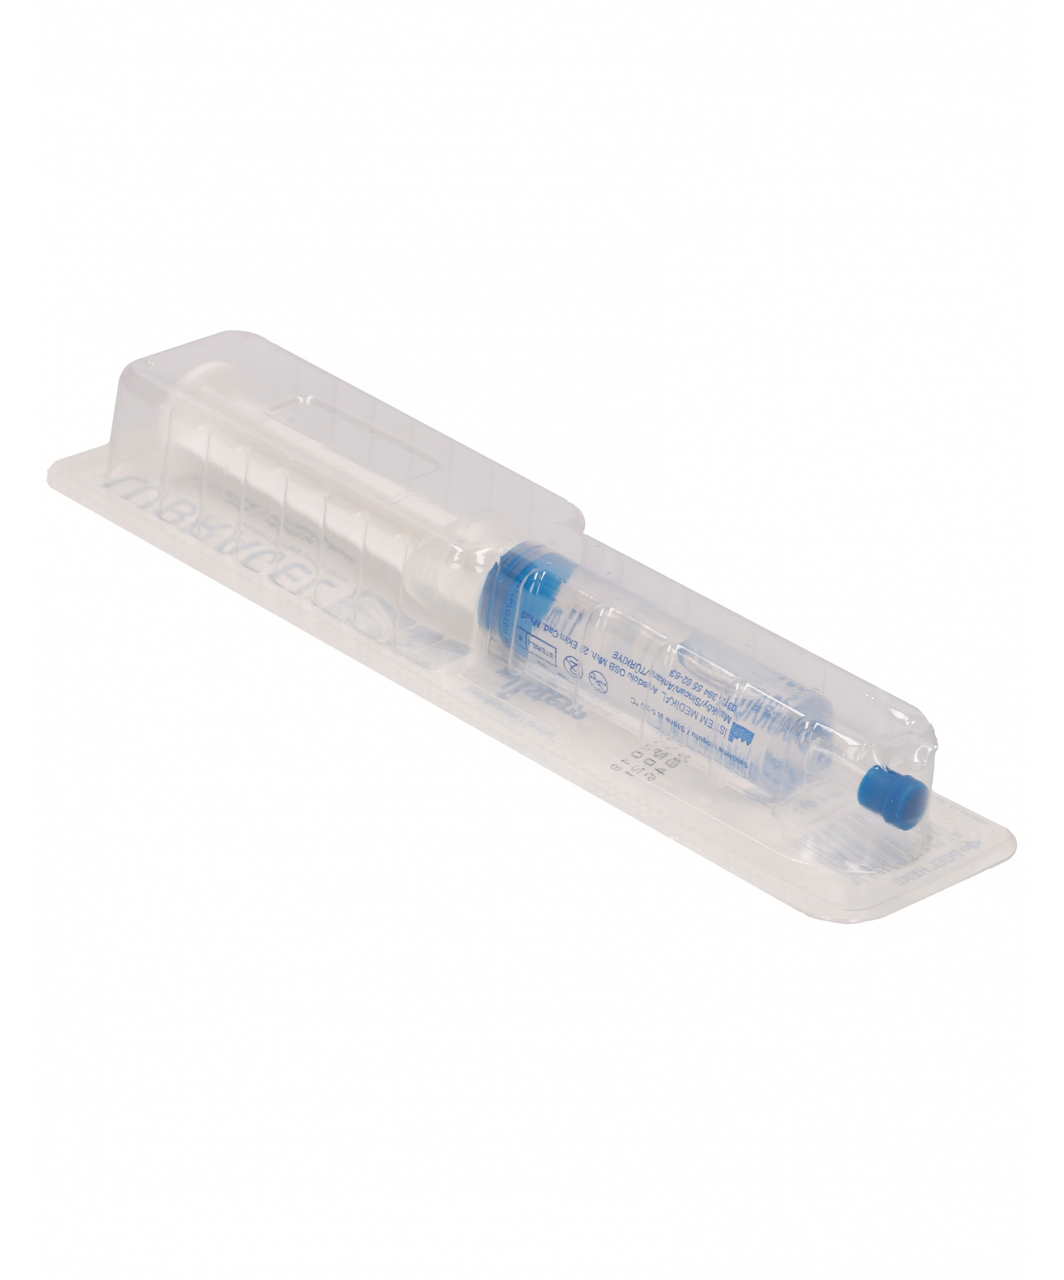 LUBRAGEL sterile anaesthetic lubricant gel (11 ml)